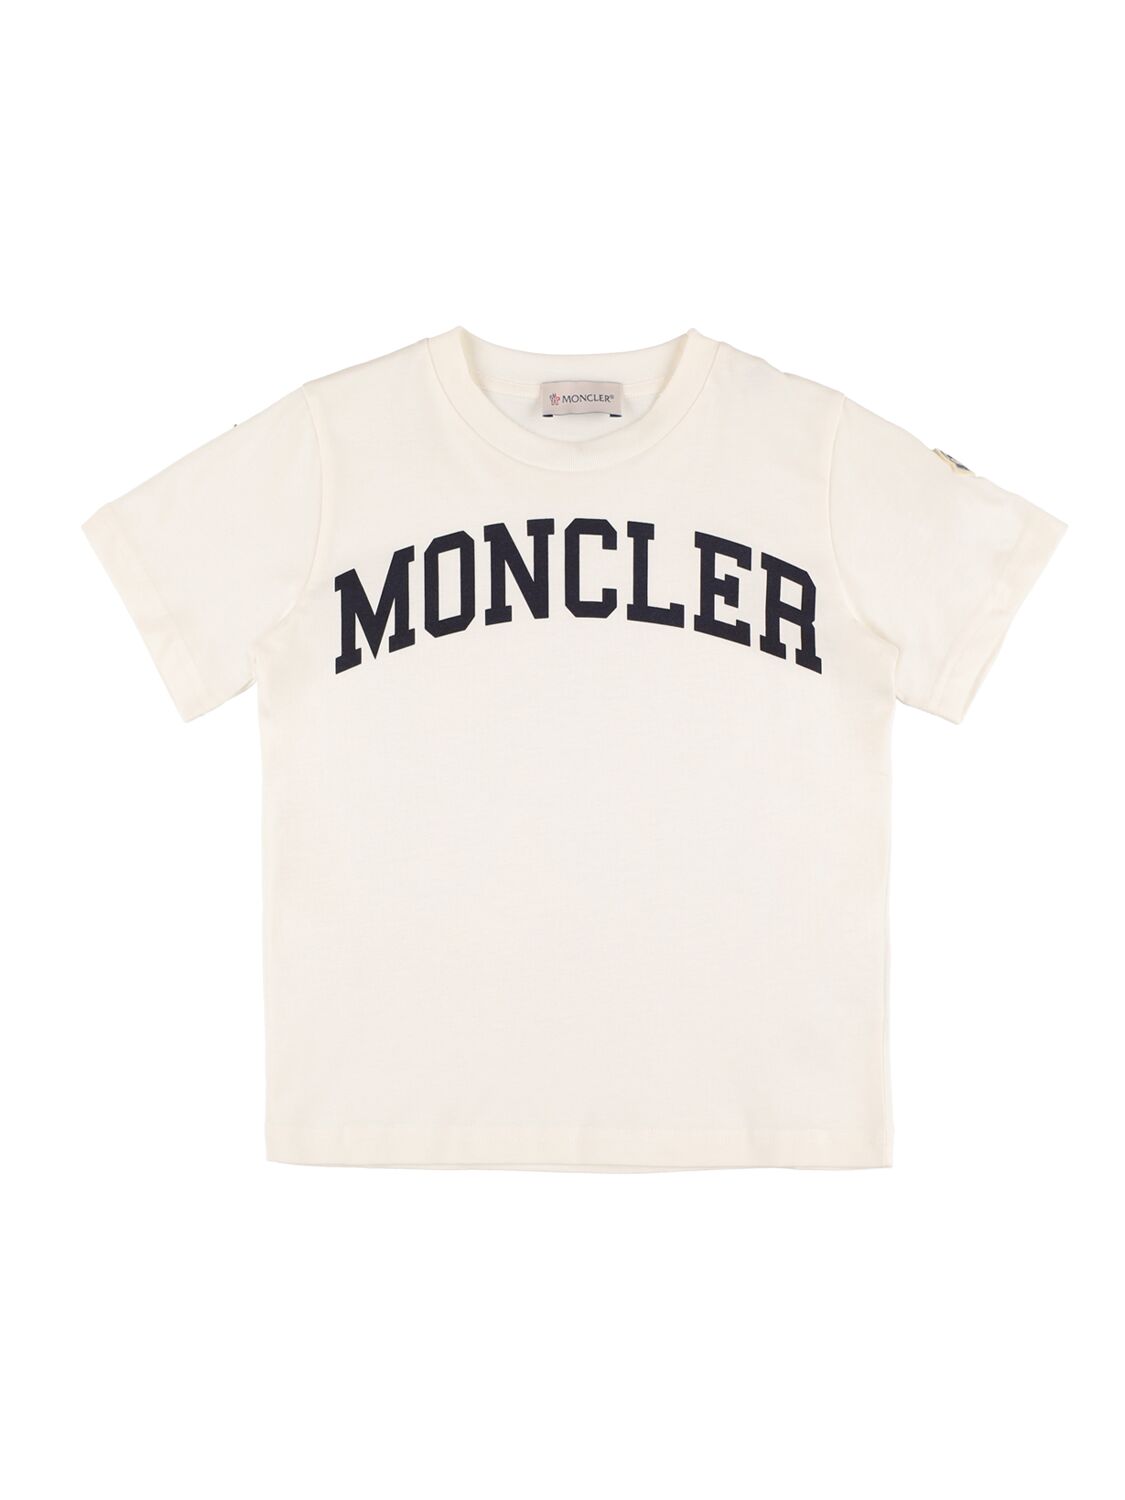 Moncler Kids' 印花棉质平纹针织t恤 In Natural